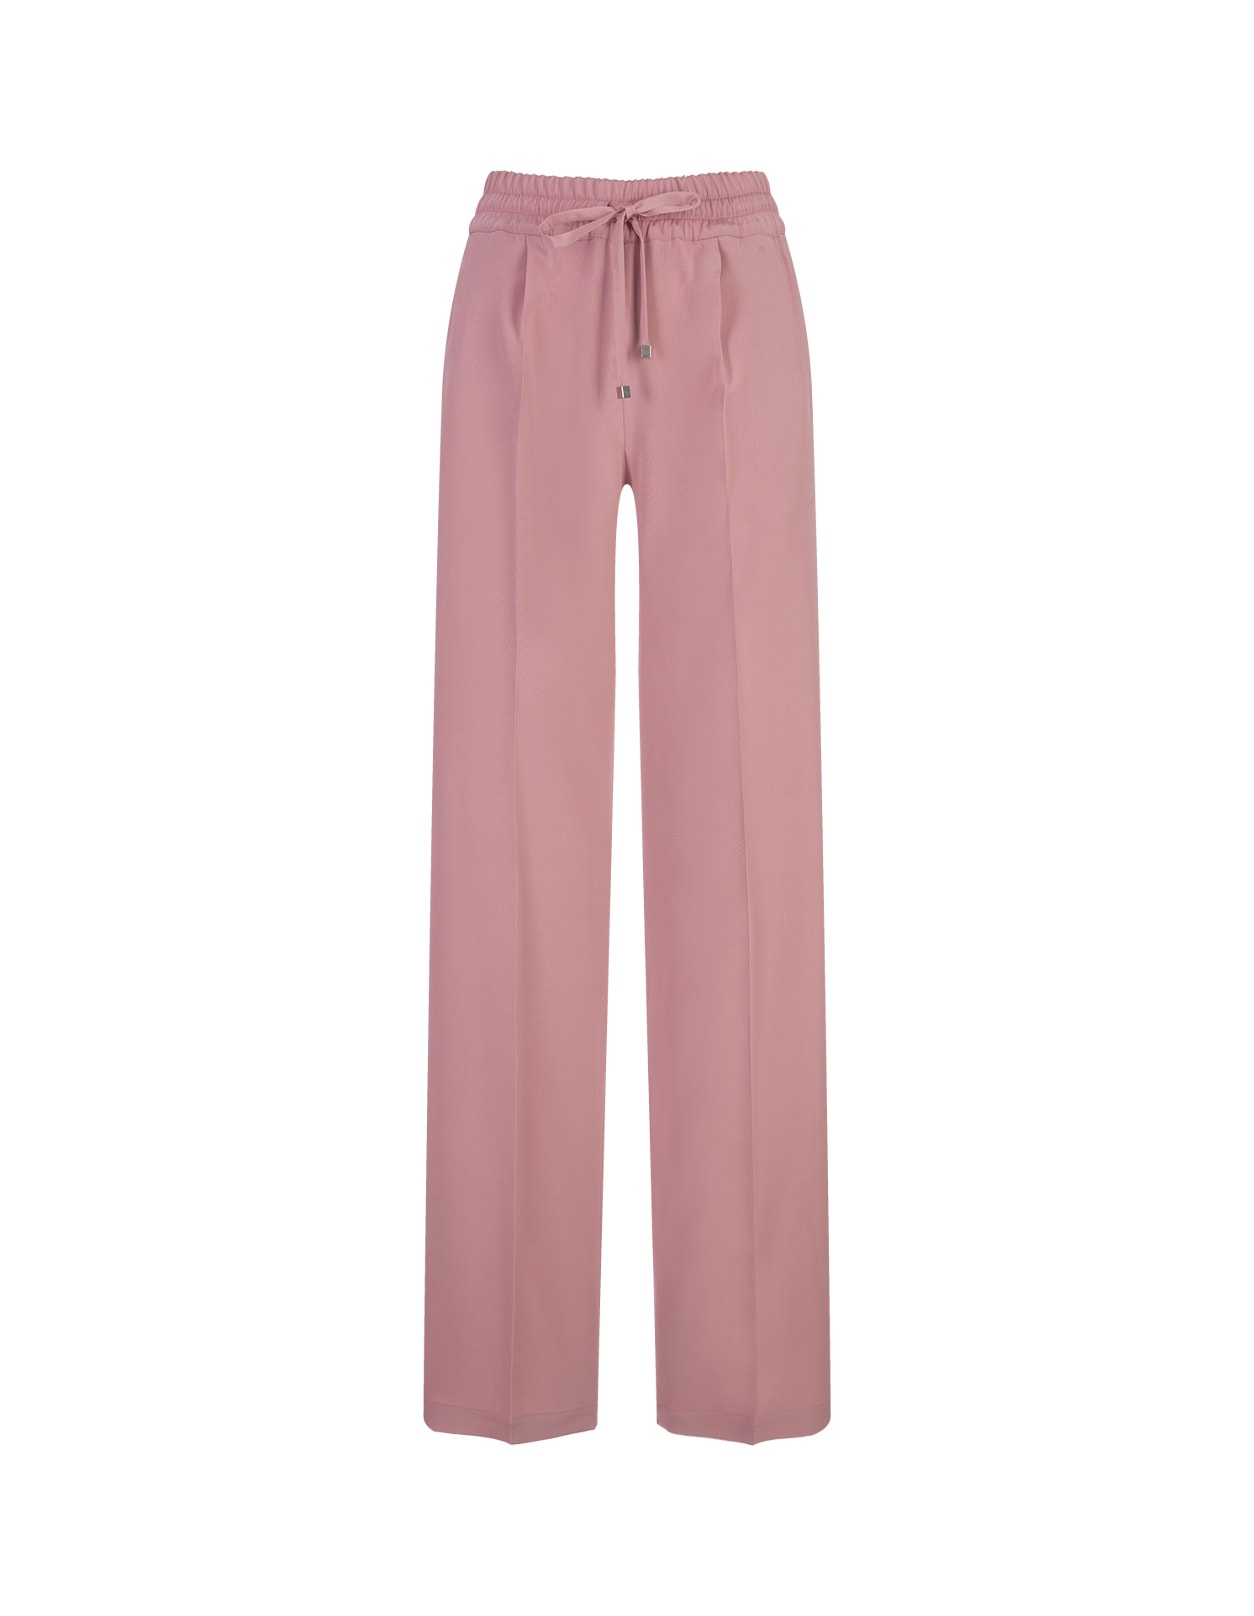 Kiton Pink Silk Blend Drawstring Trousers